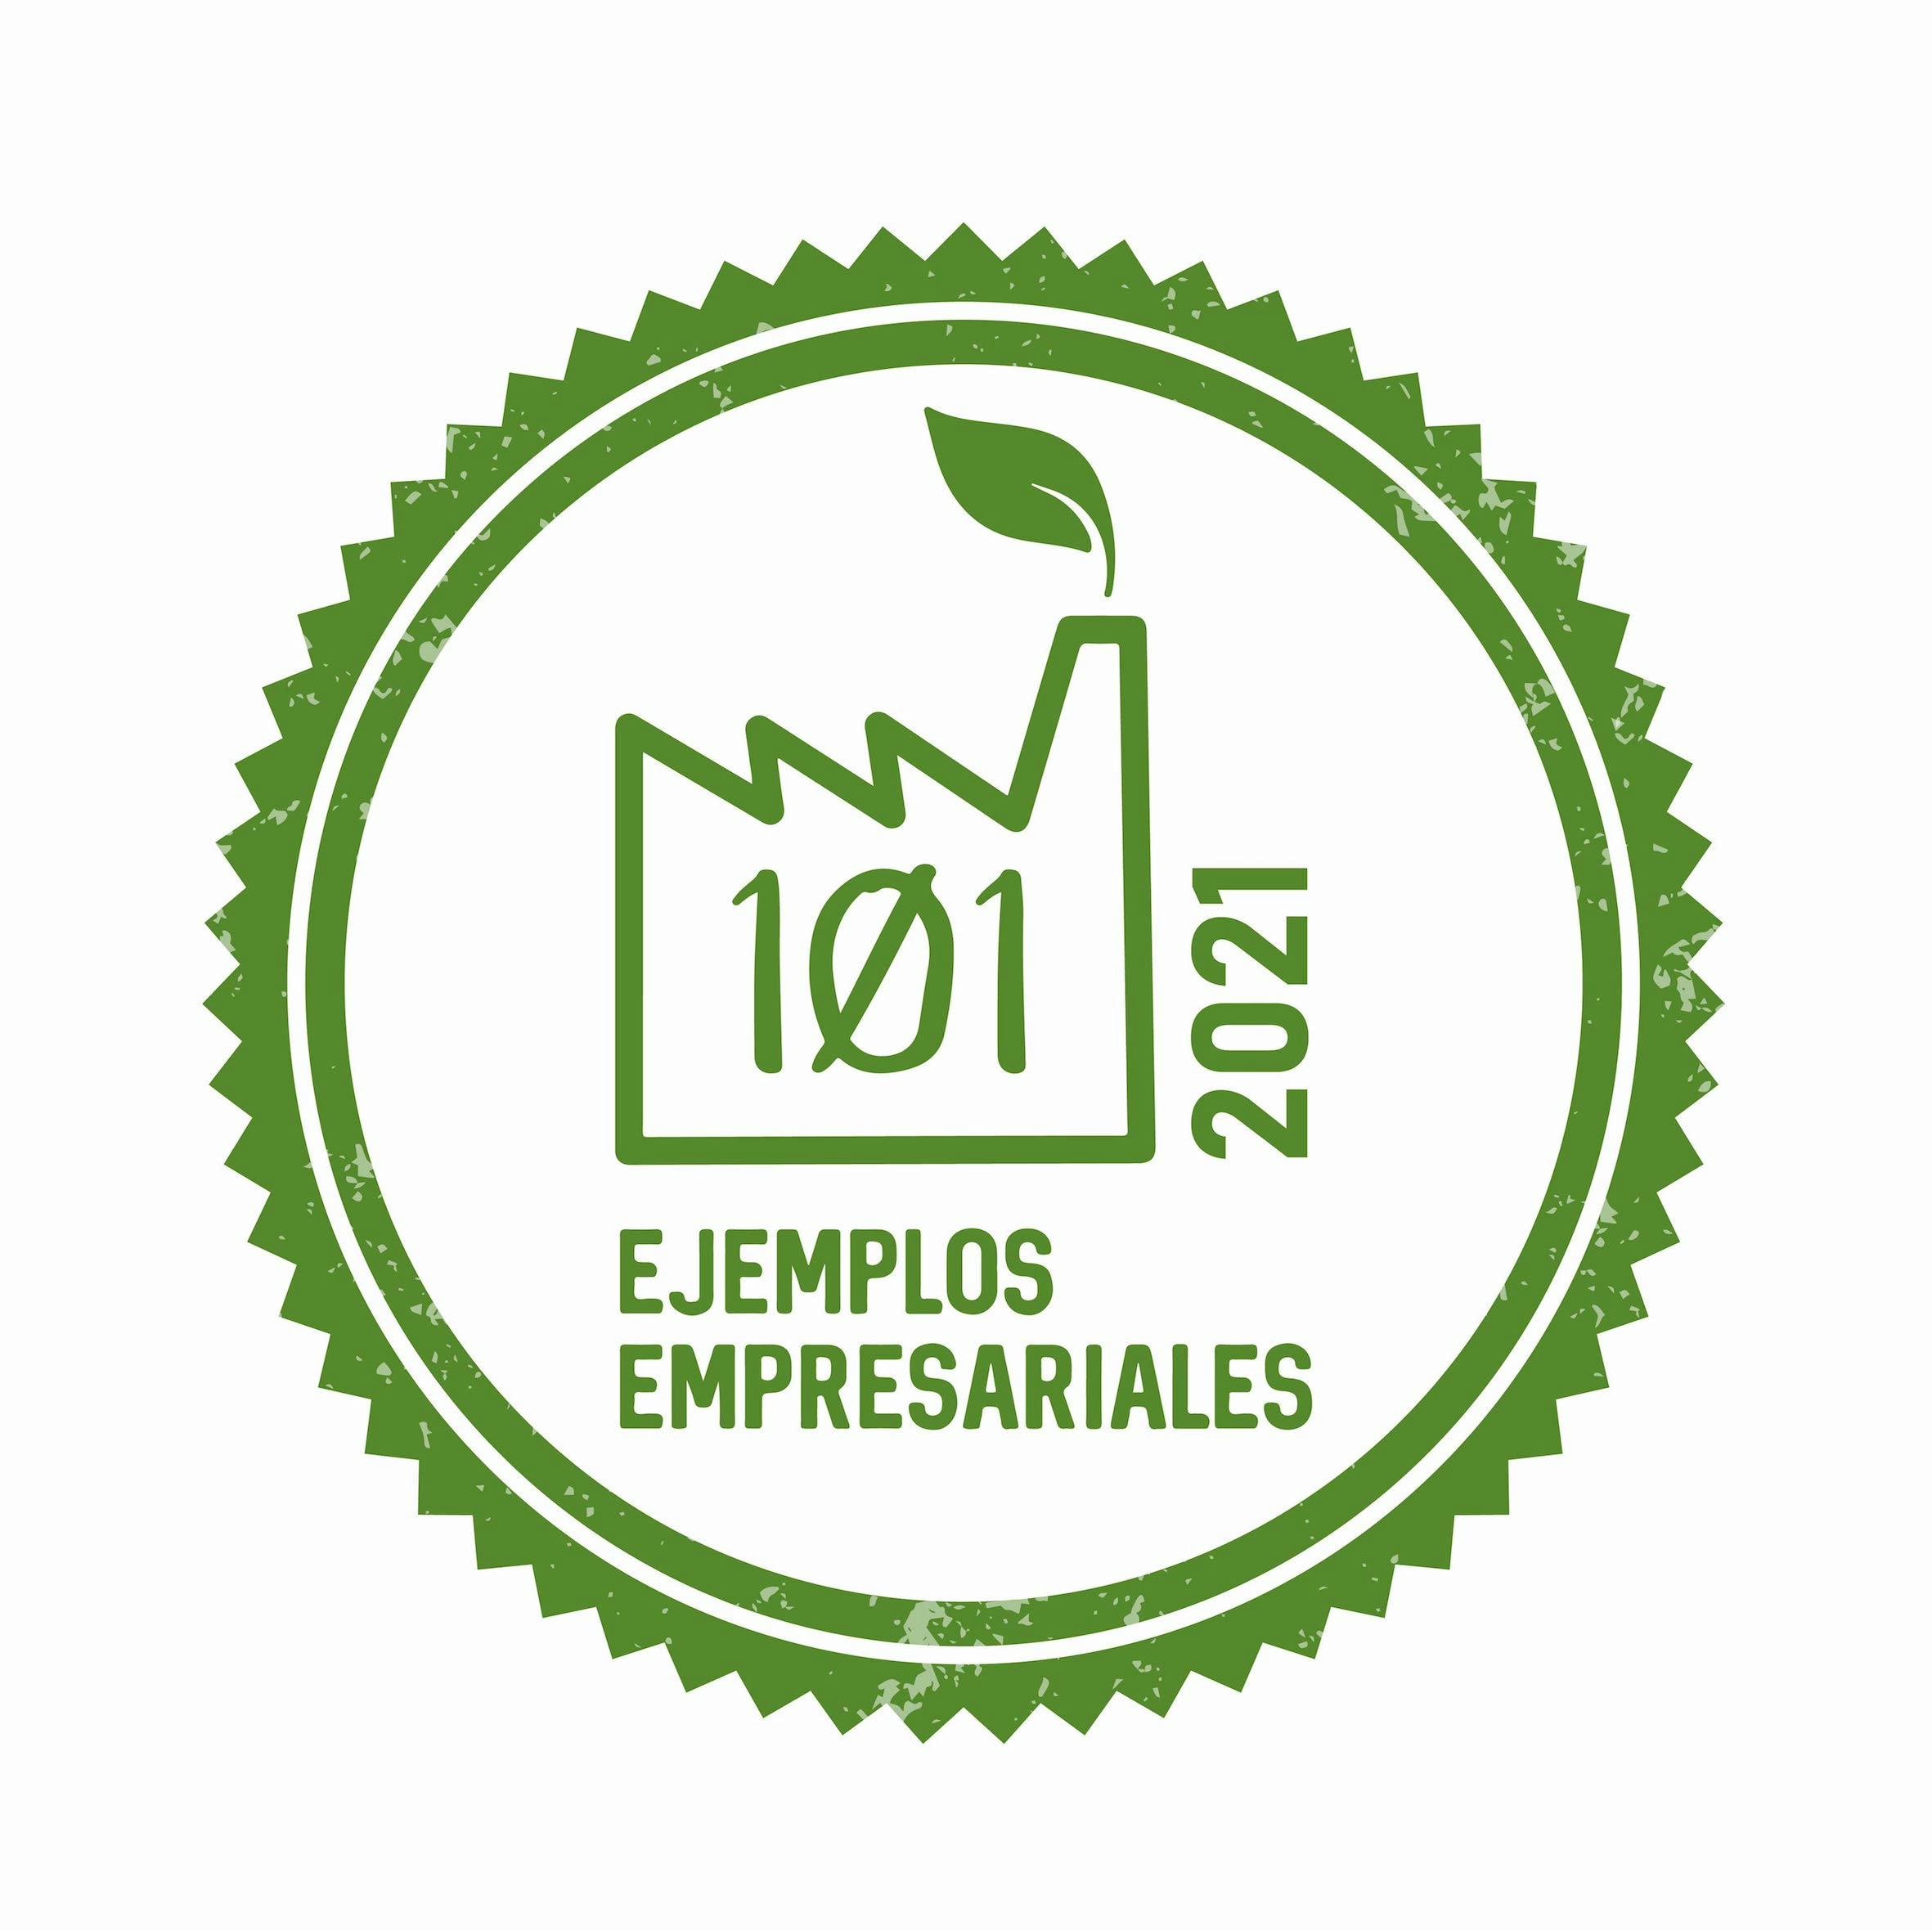 Imagen número 75 de Cosentino repite como uno de los 101 Ejemplos Empresariales de Acciones #PorElClima